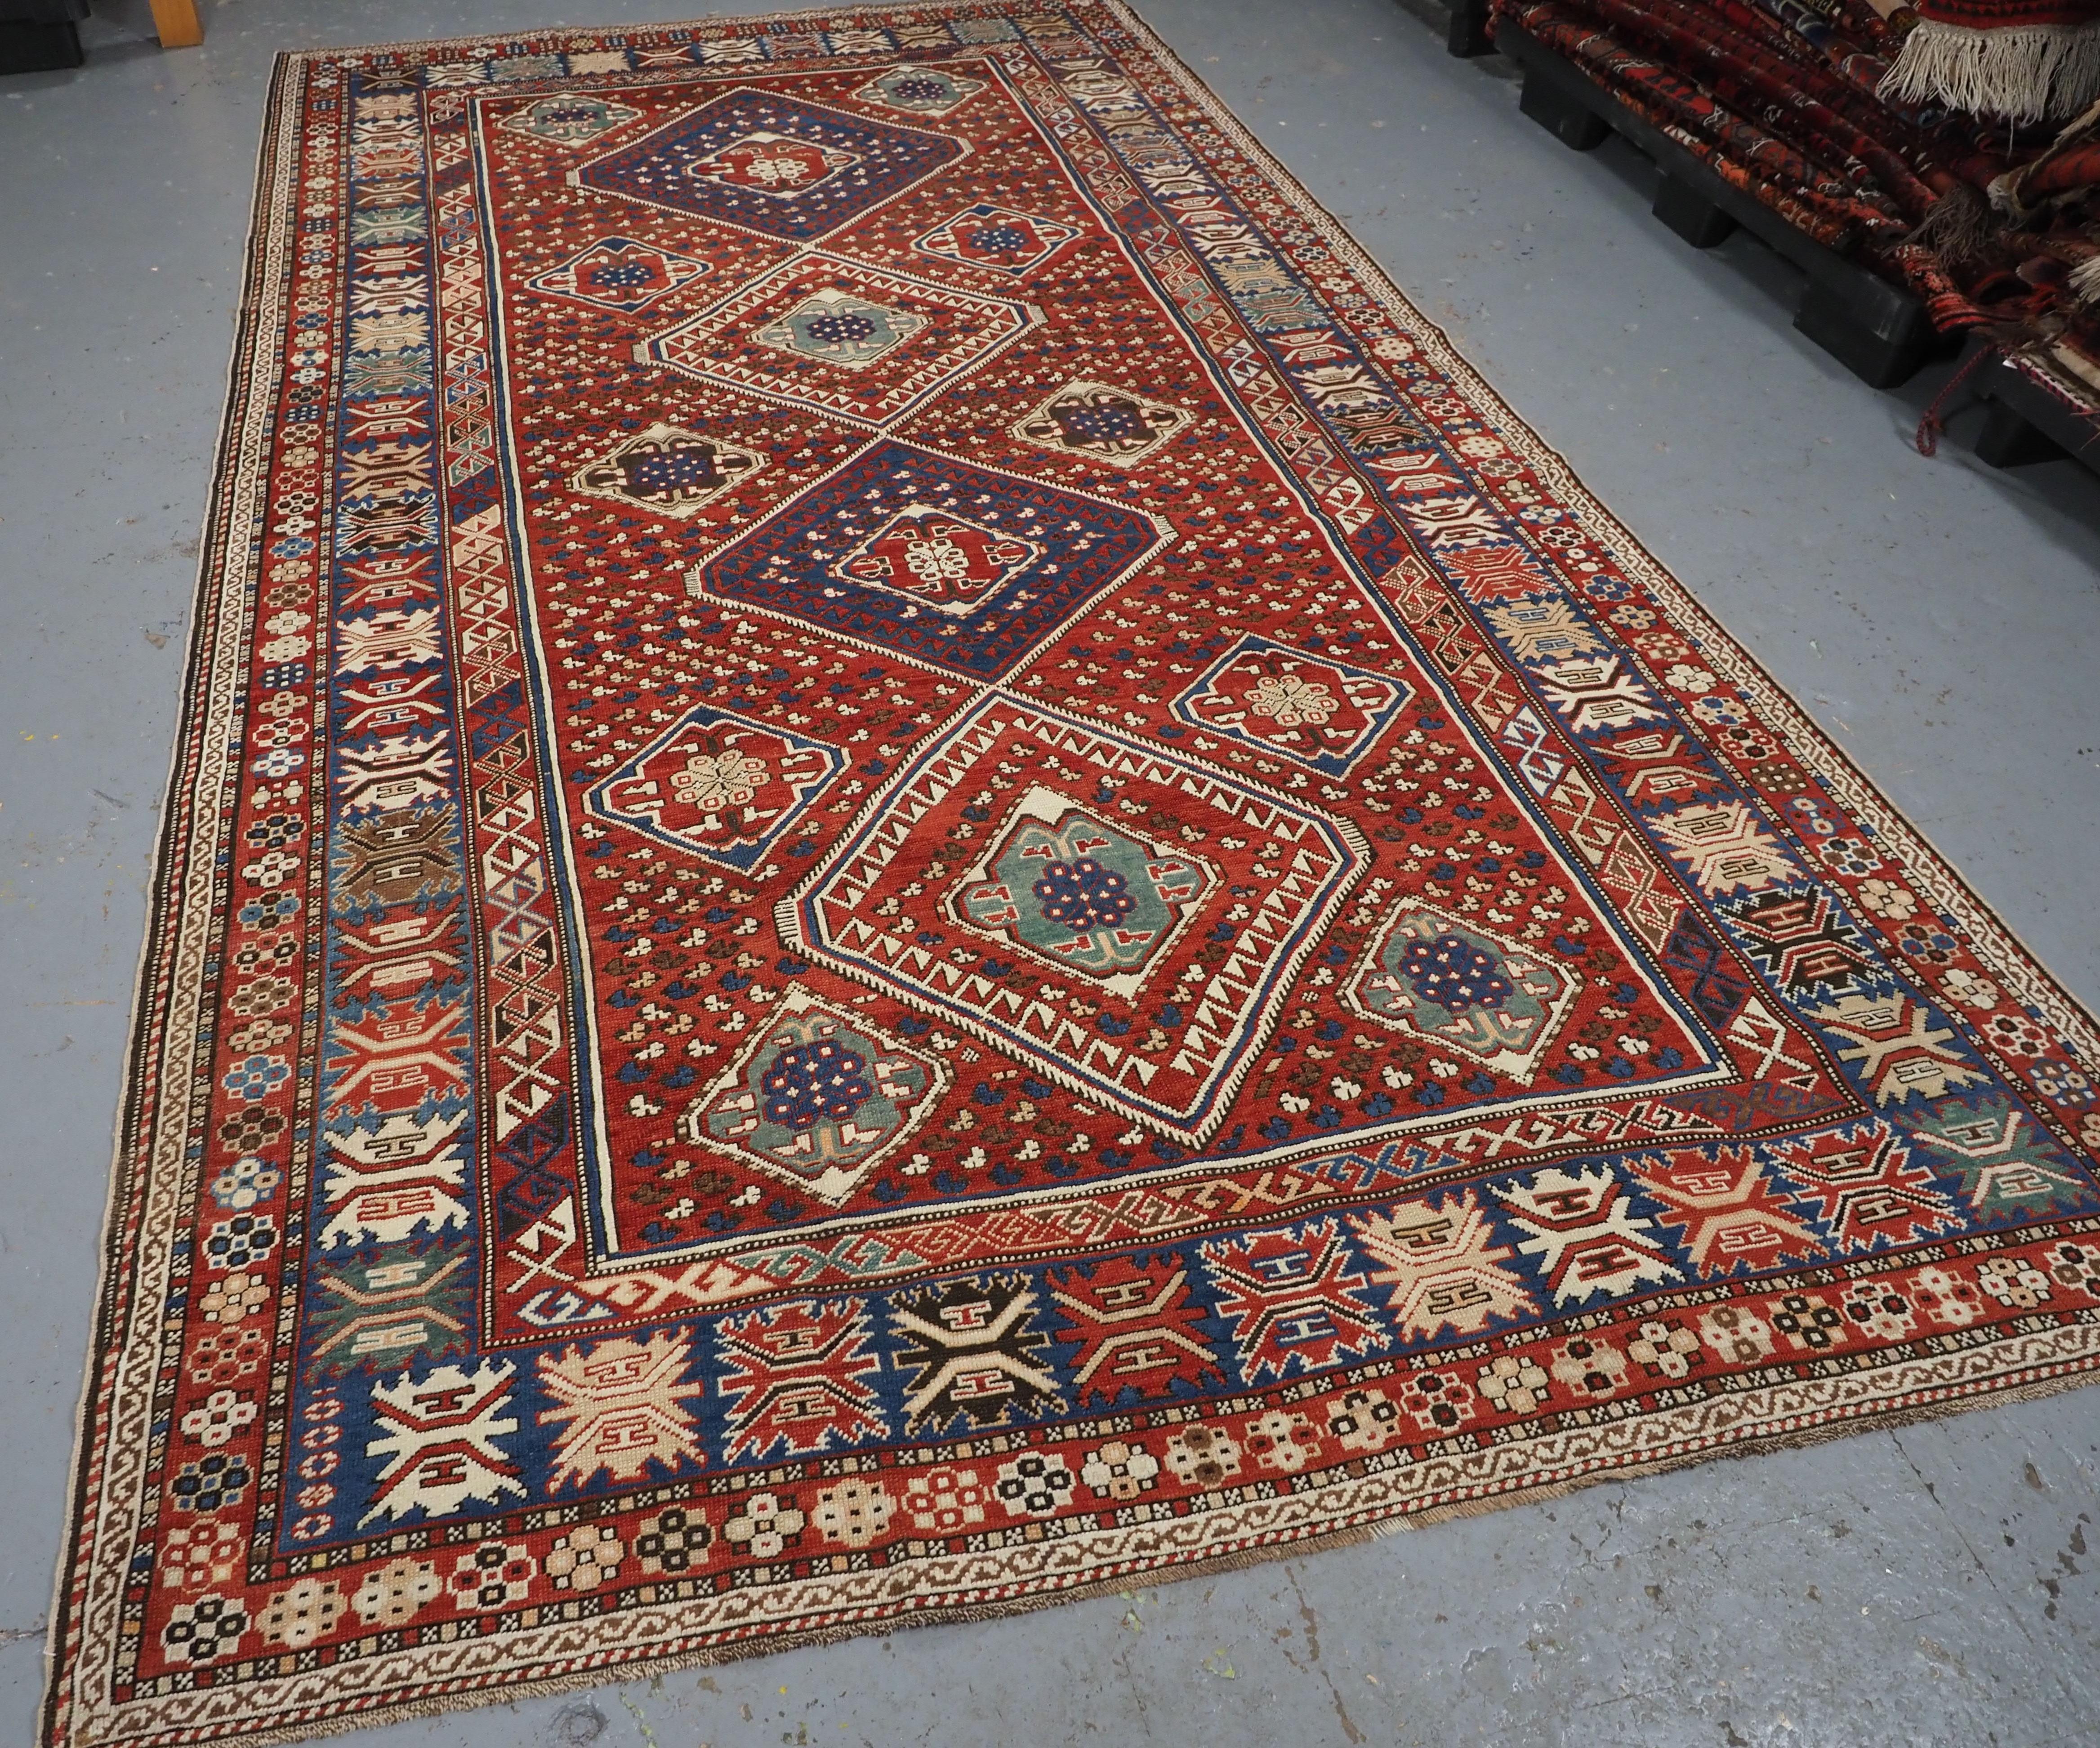 Größe: 332 x 184 cm (10ft 11in x 6ft 0in).

Antiker kaukasischer Khila-Teppich aus der Region Baku im Ostkaukasus.

Um 1890.

Dies ist ein hervorragendes Beispiel für diese Art von Teppich, mit vier großen Diamantmedaillons auf krapprotem Grund. Die